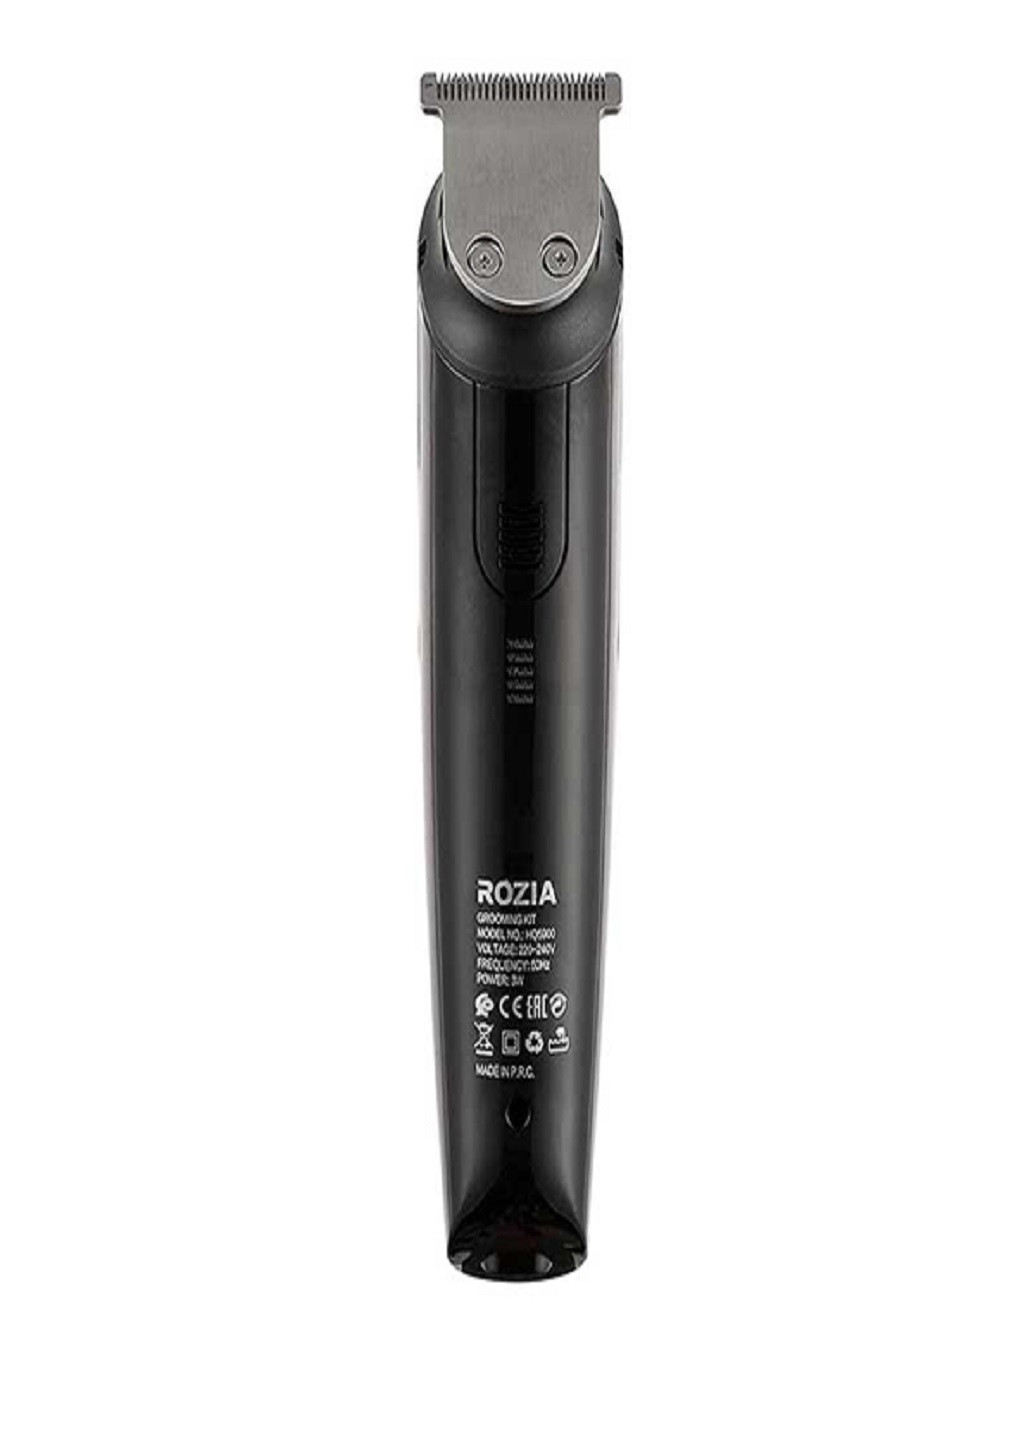 Триммер стайлер для стрижки волос и бороды профессиональный аккумуляторный беспроводной 6в1 HQ-5900 VTech (252814628)